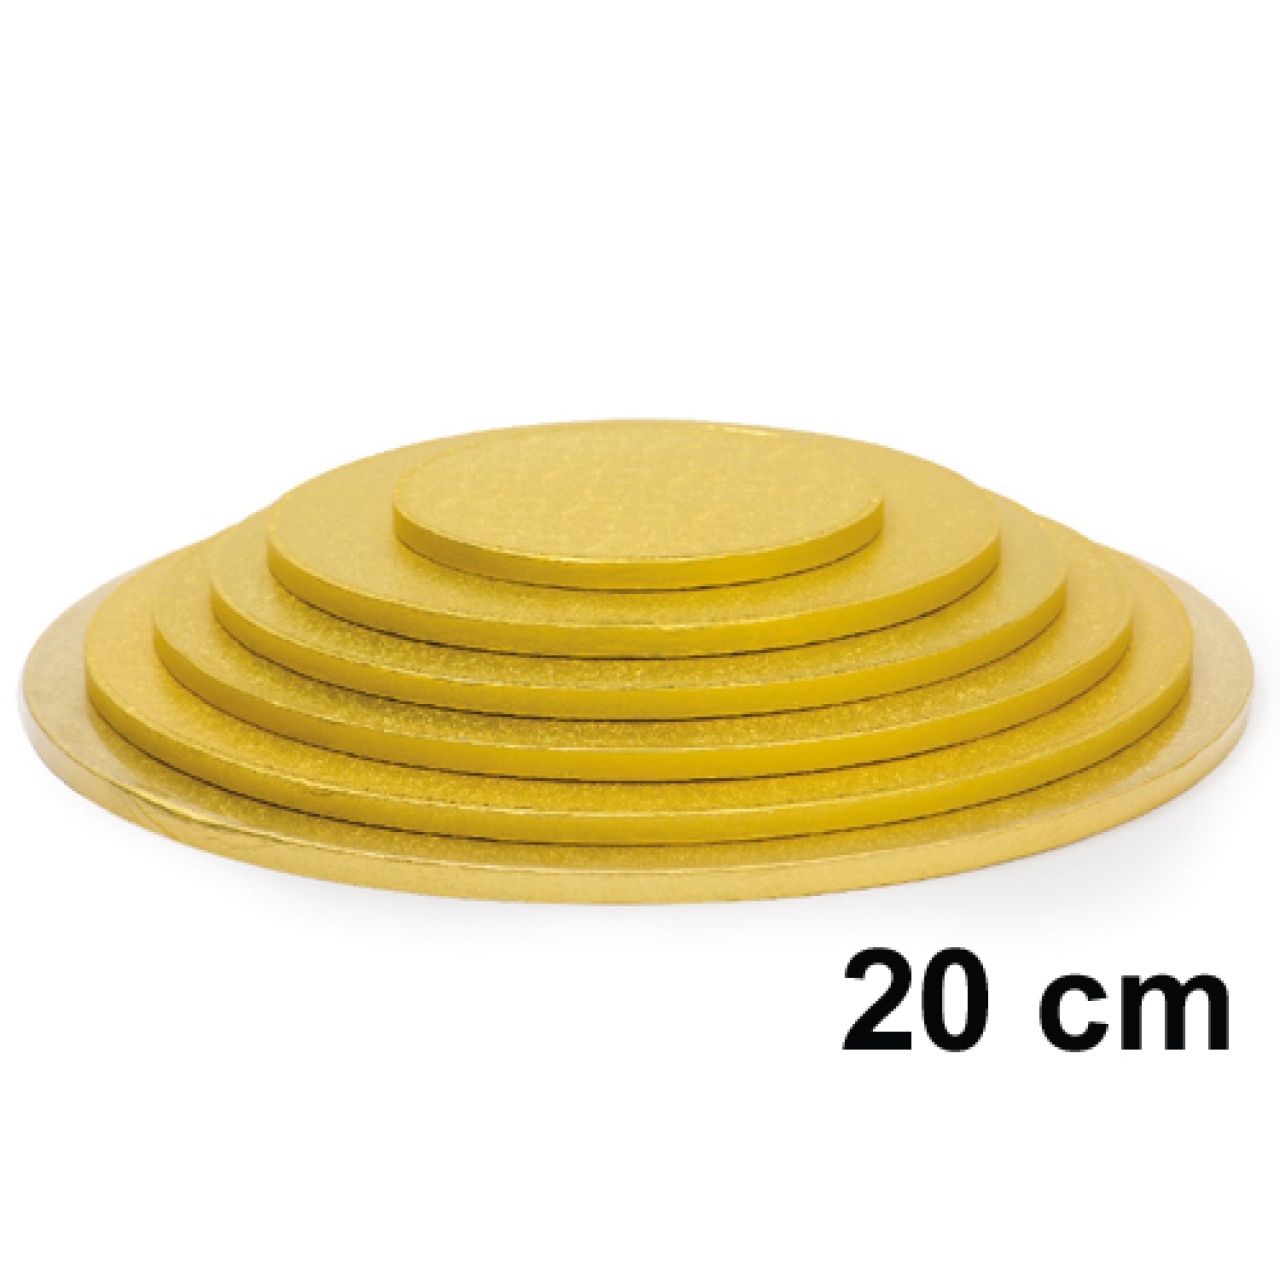 Cake Board, Gold, Rund, 20 cm, ~1,2 cm dick